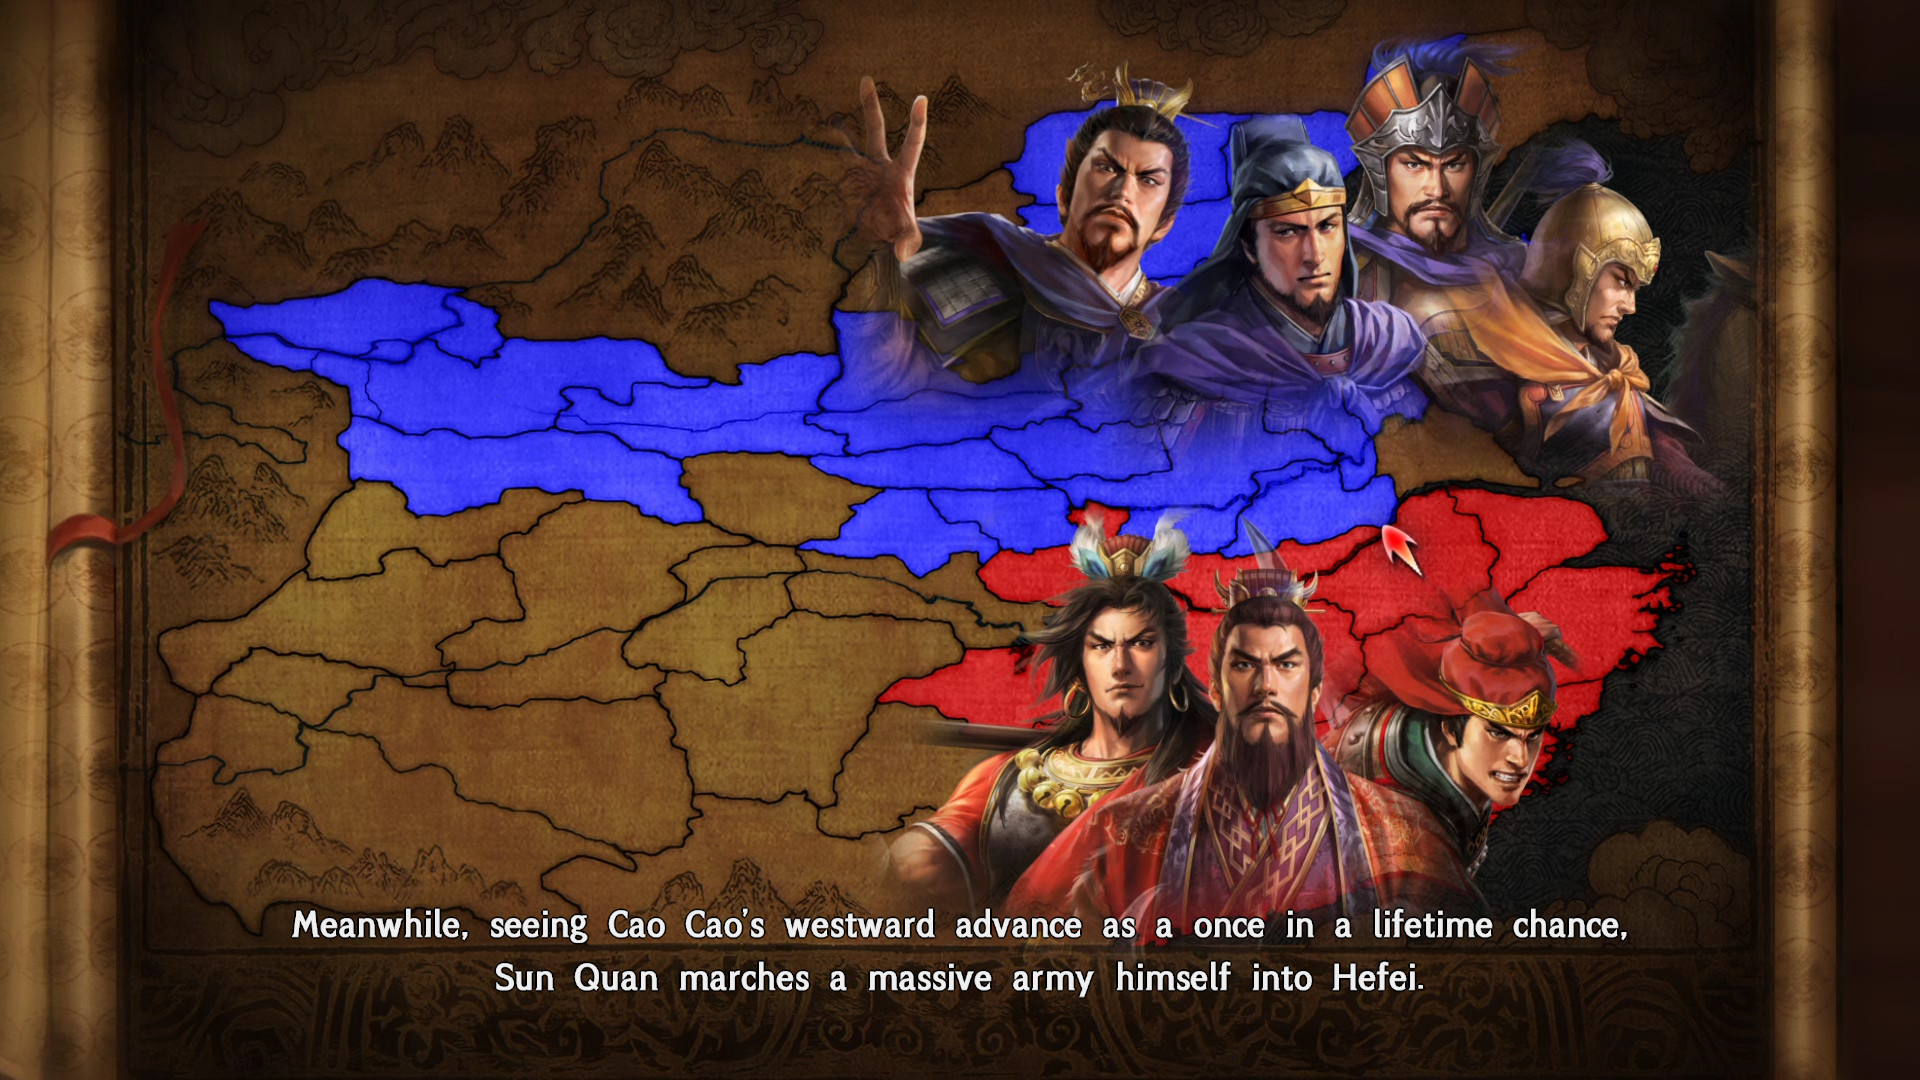 RTK14: Scenario [The Battle of Hefei] & Event Set screenshot